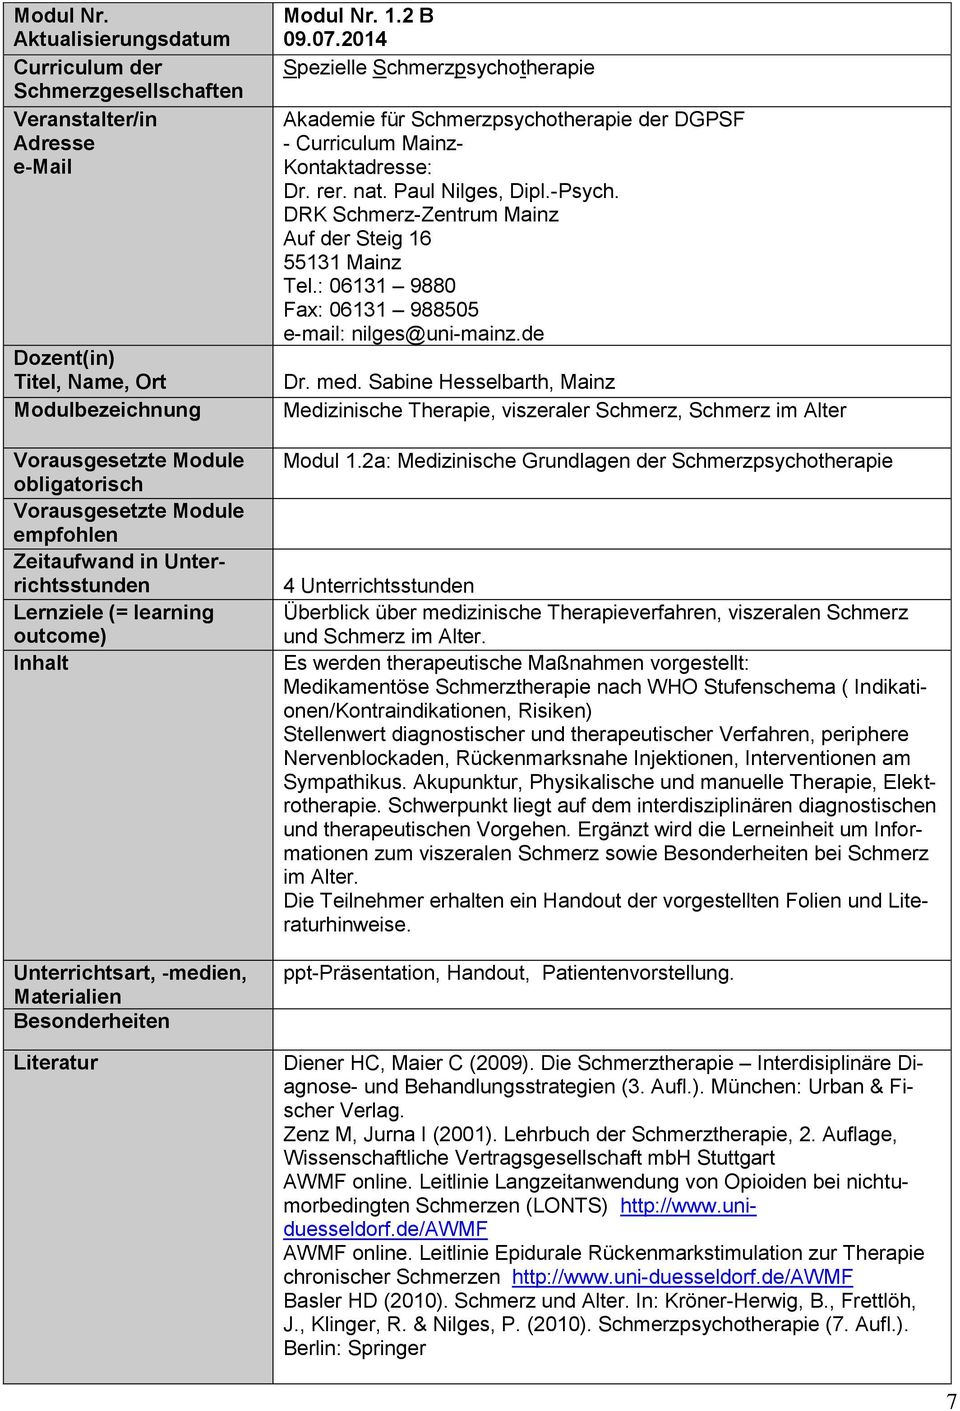 -medien, Materialien Besonderheiten Literatur  1.2 B - Curriculum Mainz- Dr. rer. nat. Paul Nilges, Dipl.-Psych. DRK Schmerz-Zentrum Mainz Tel.: 06131 9880 Fax: 06131 988505 e-mail: nilges@uni-mainz.